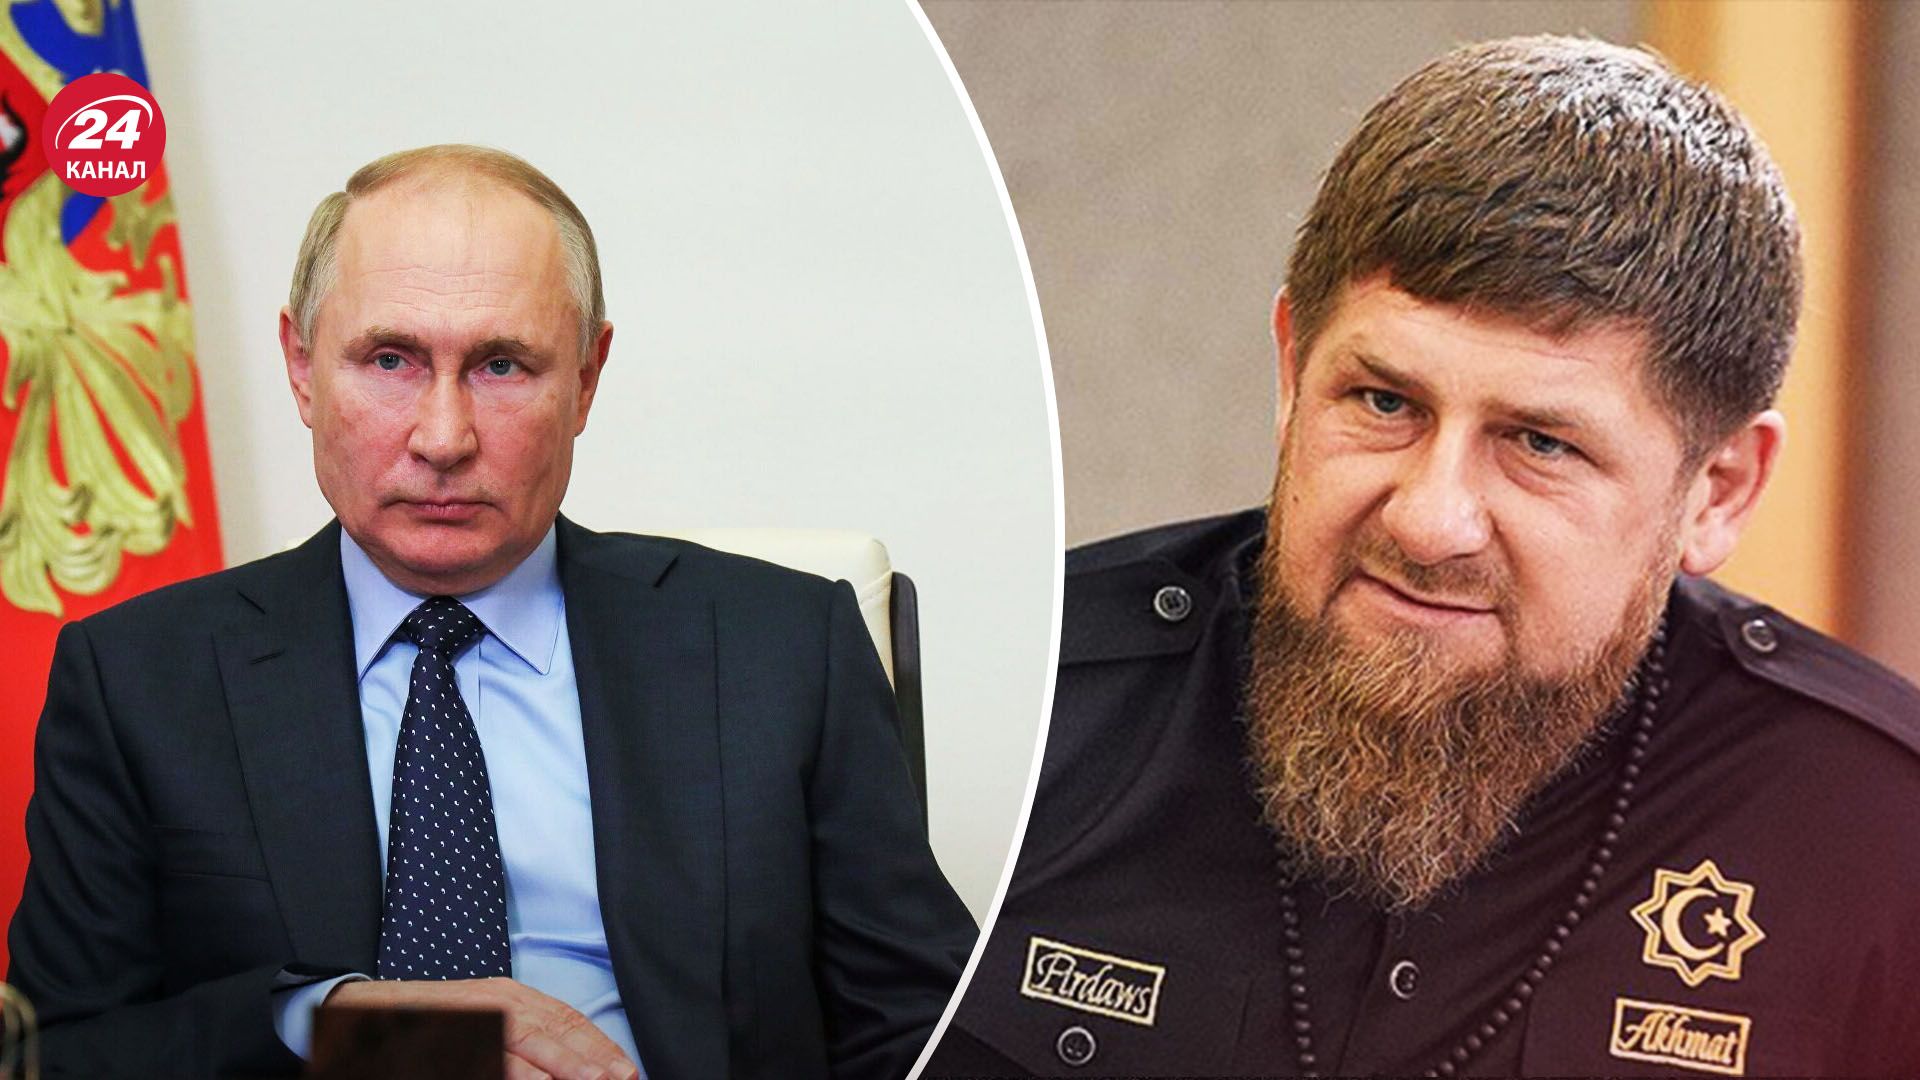 Син Кадирова побив ув'язненого за спалення Корану - чому інцидент у Чечні нашкодив Путіну - 24 Канал